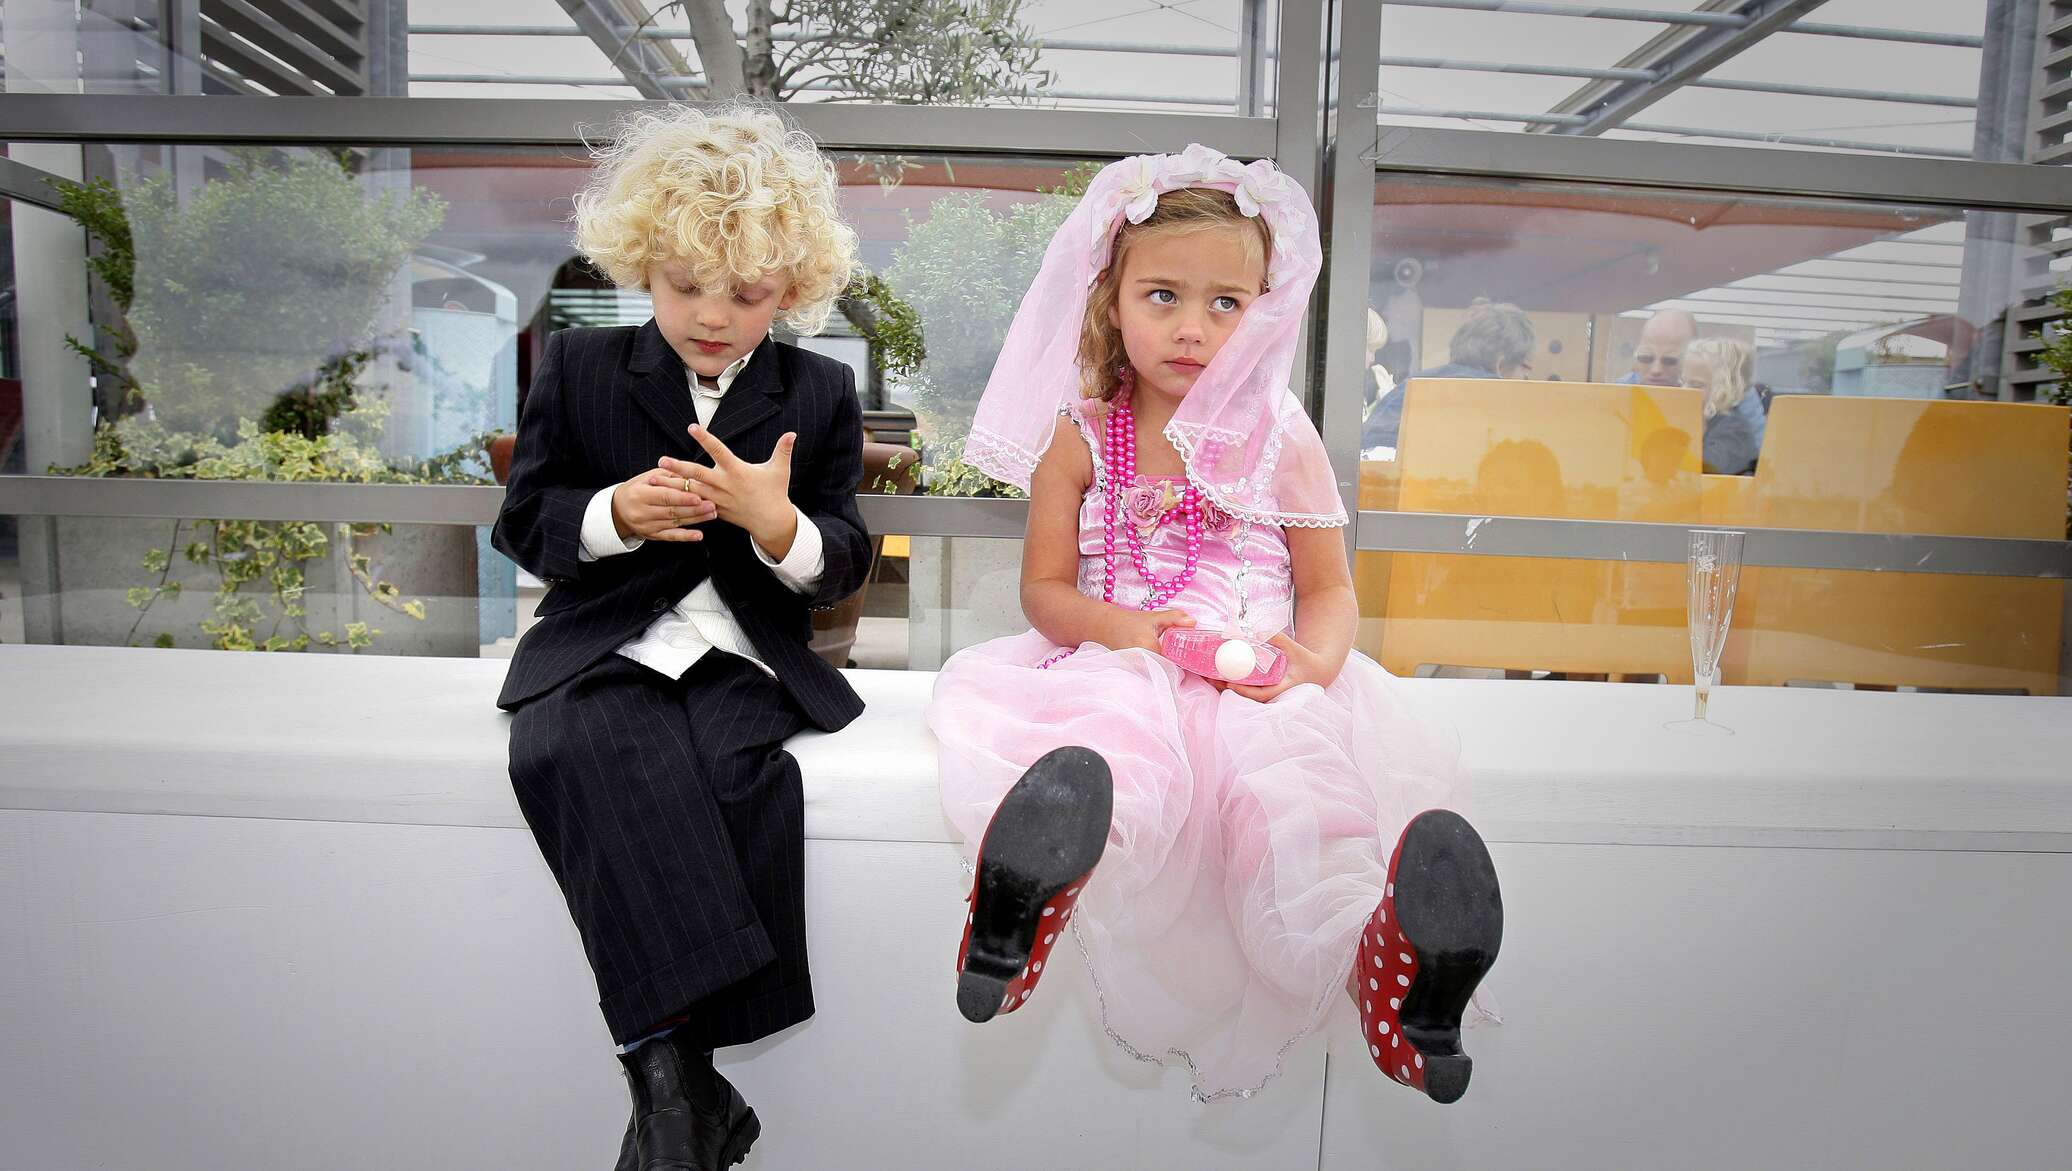 Брак несовершеннолетних в рф. Дети в свадебных нарядах. Ранние браки. Ранняя свадьба. Дети на свадьбе.